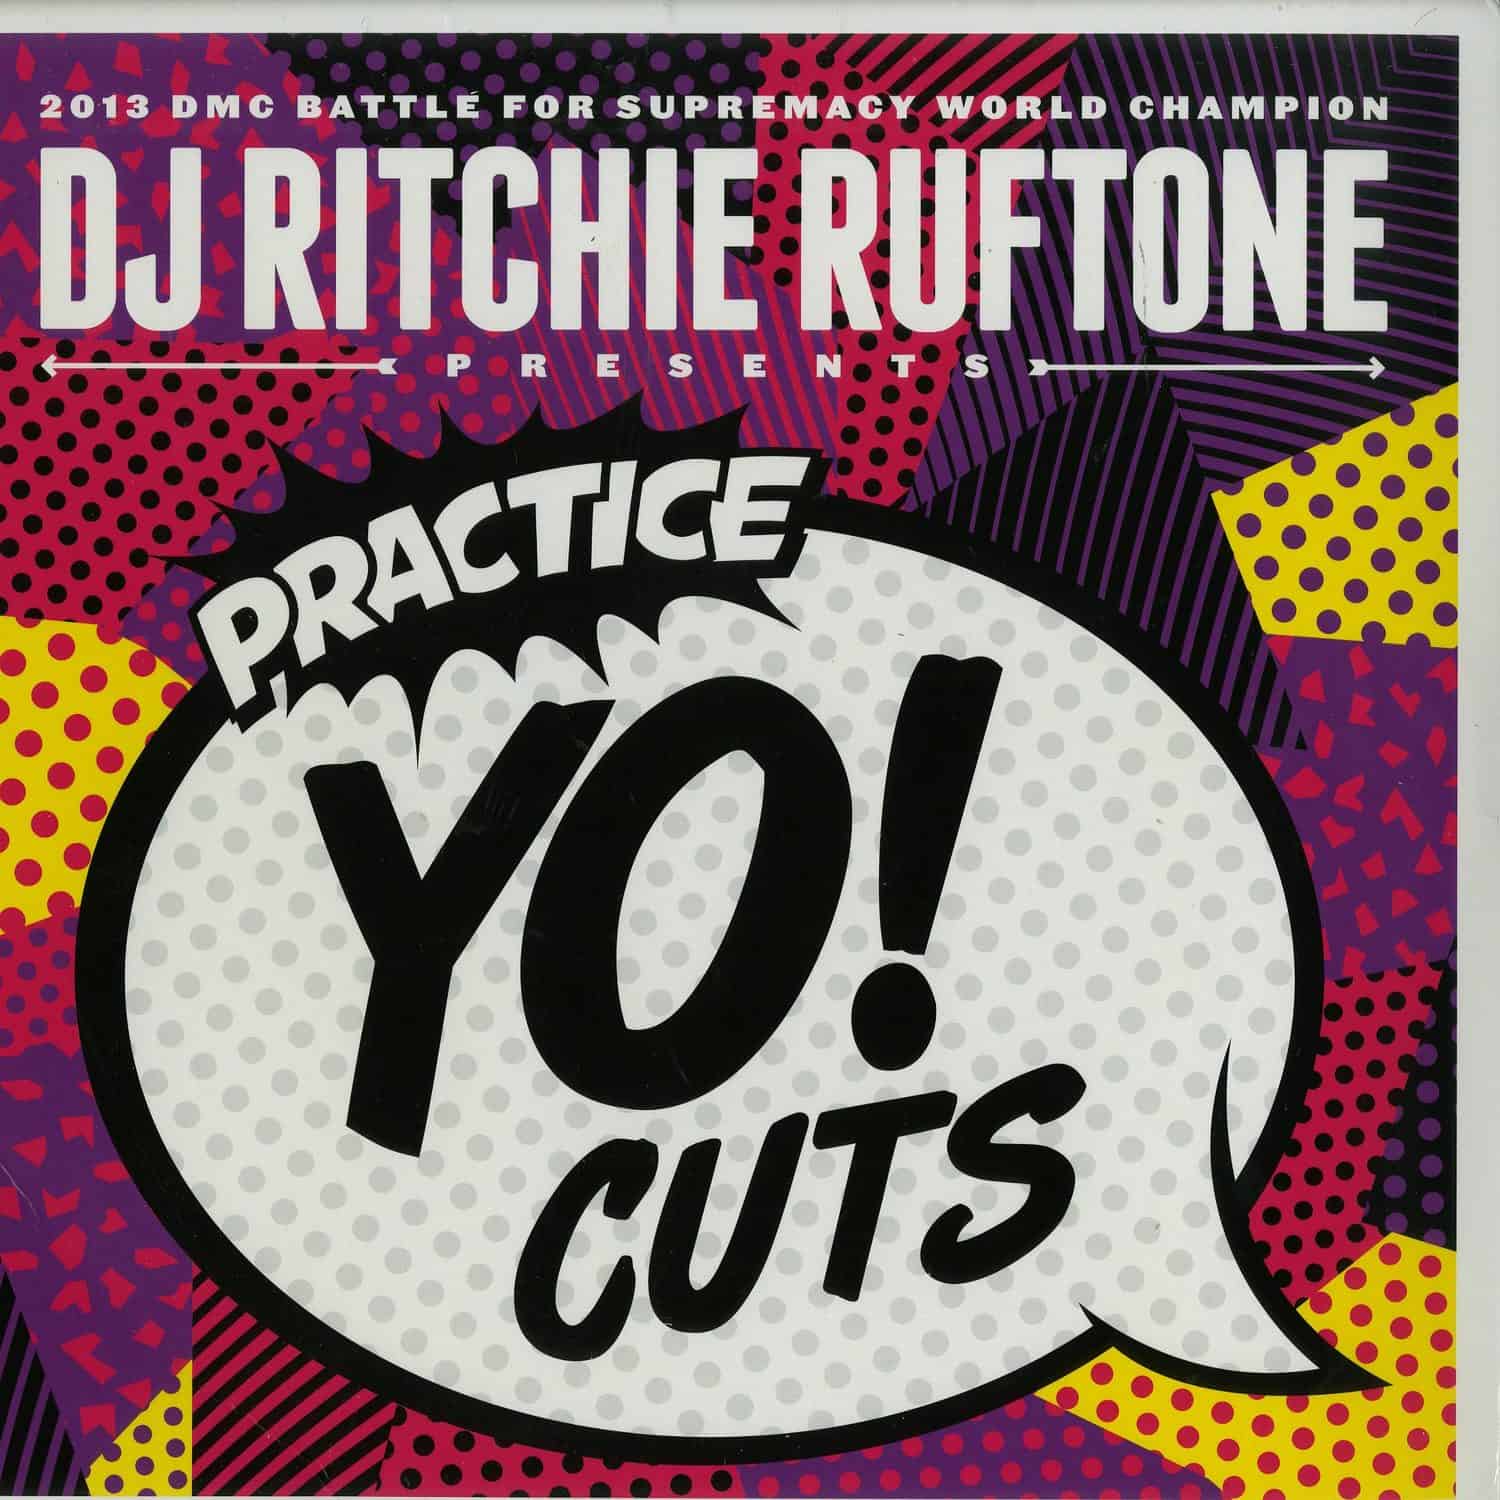 Ritchie Ruftone - PRACTICE YO CUTS